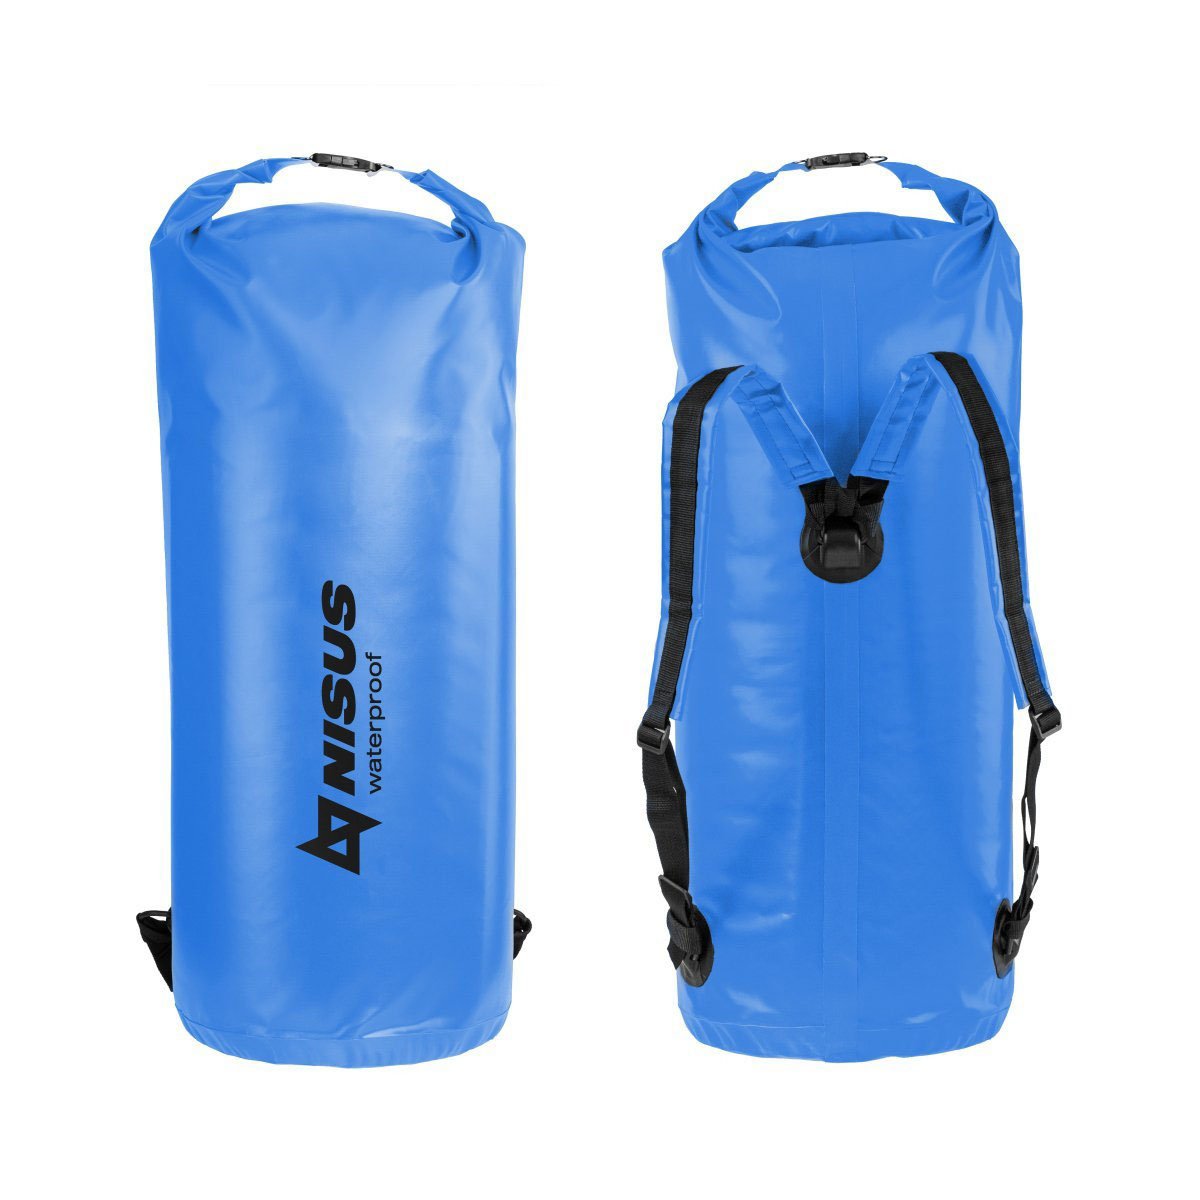 70L Waterproof Large Dry Bag, Backpack with Shoulder Straps, Blue